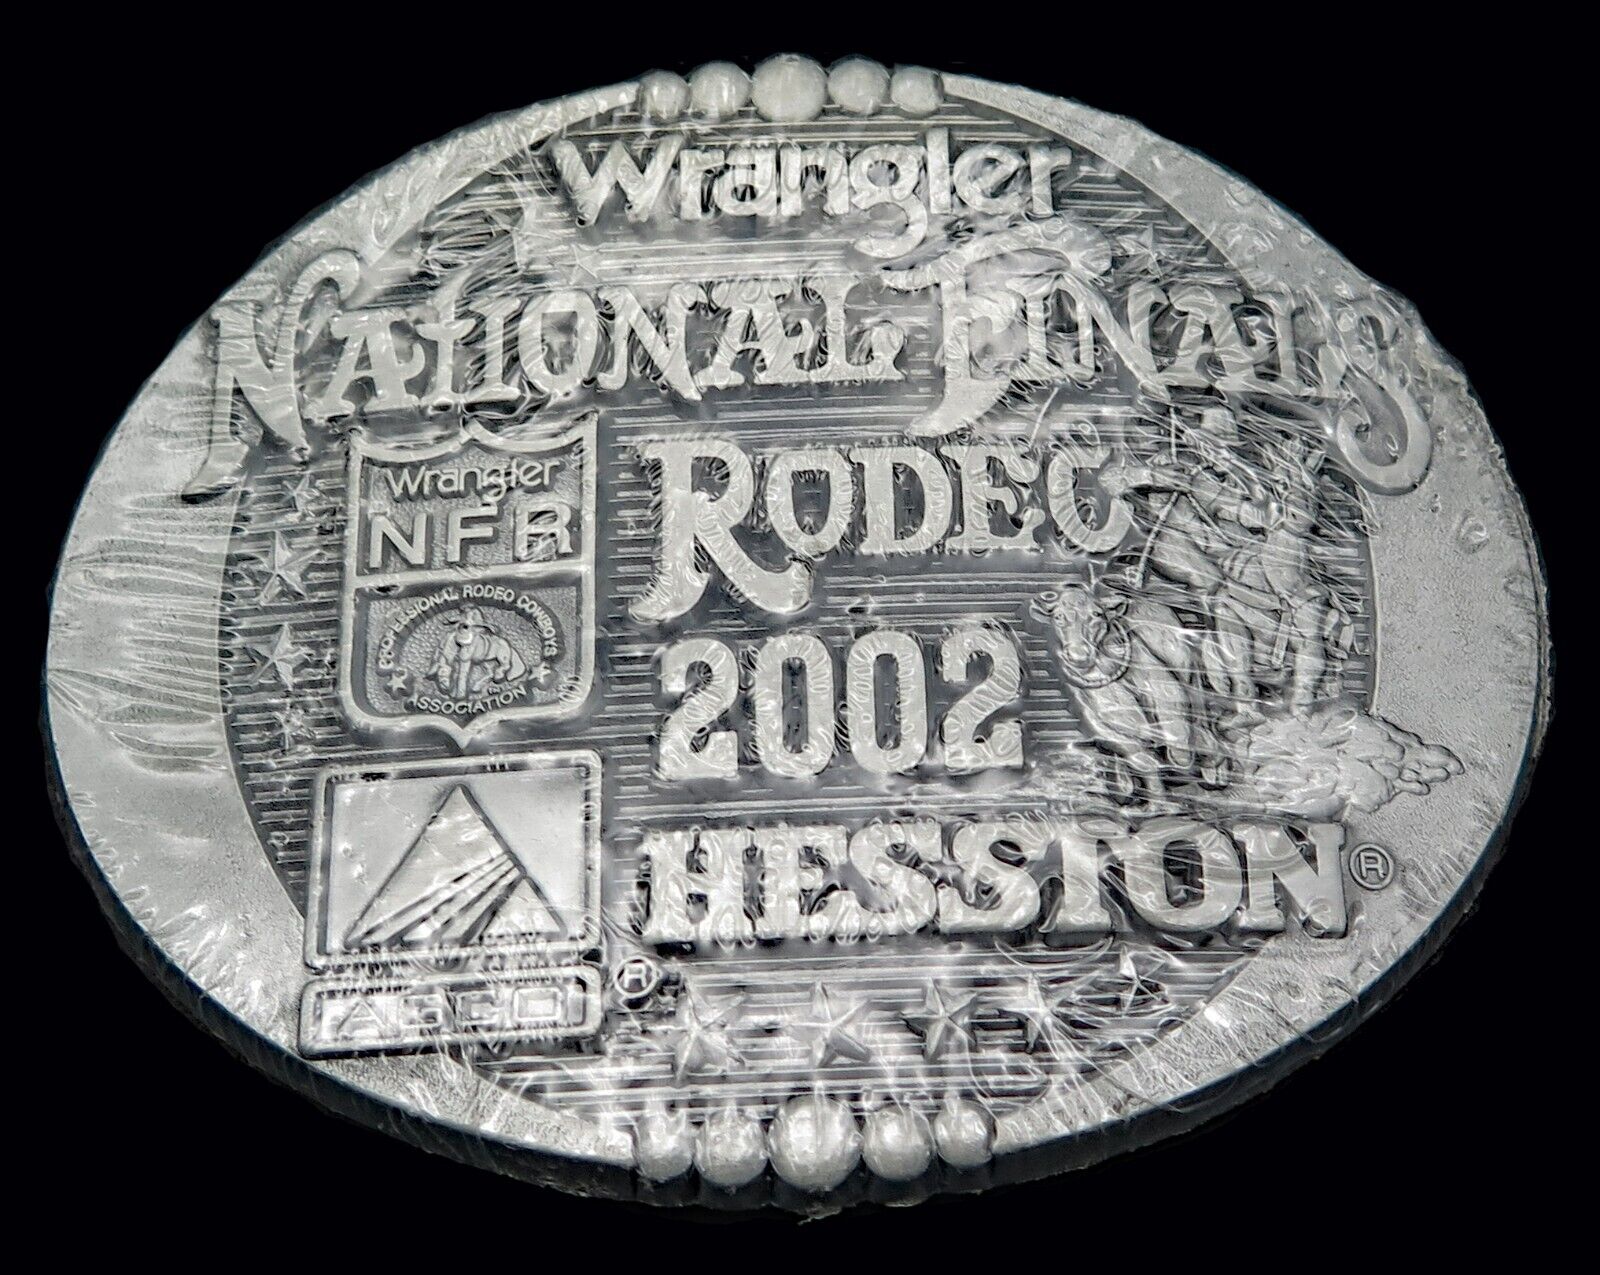 2002 Hesston Rodeo Western Cowboy Calf Roping NFR Vintage Belt Buckle